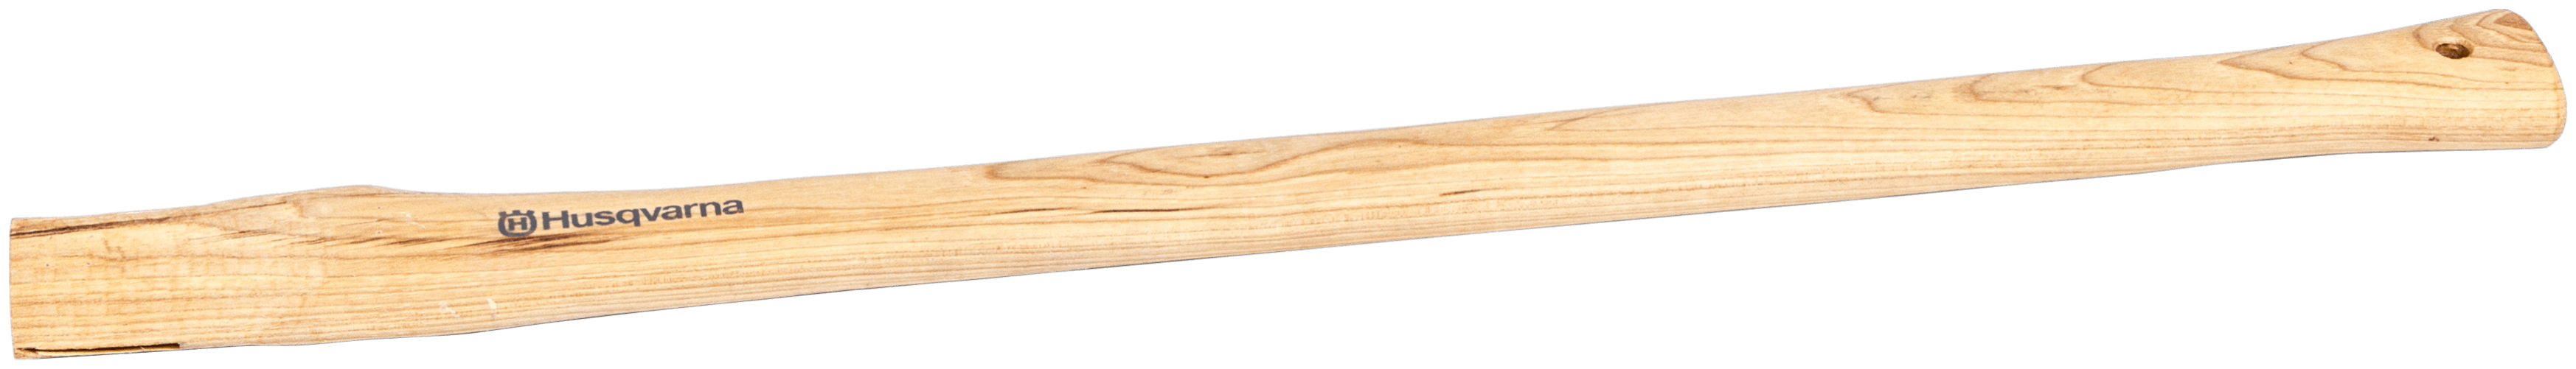 Shaft 75 cm Splitting axe